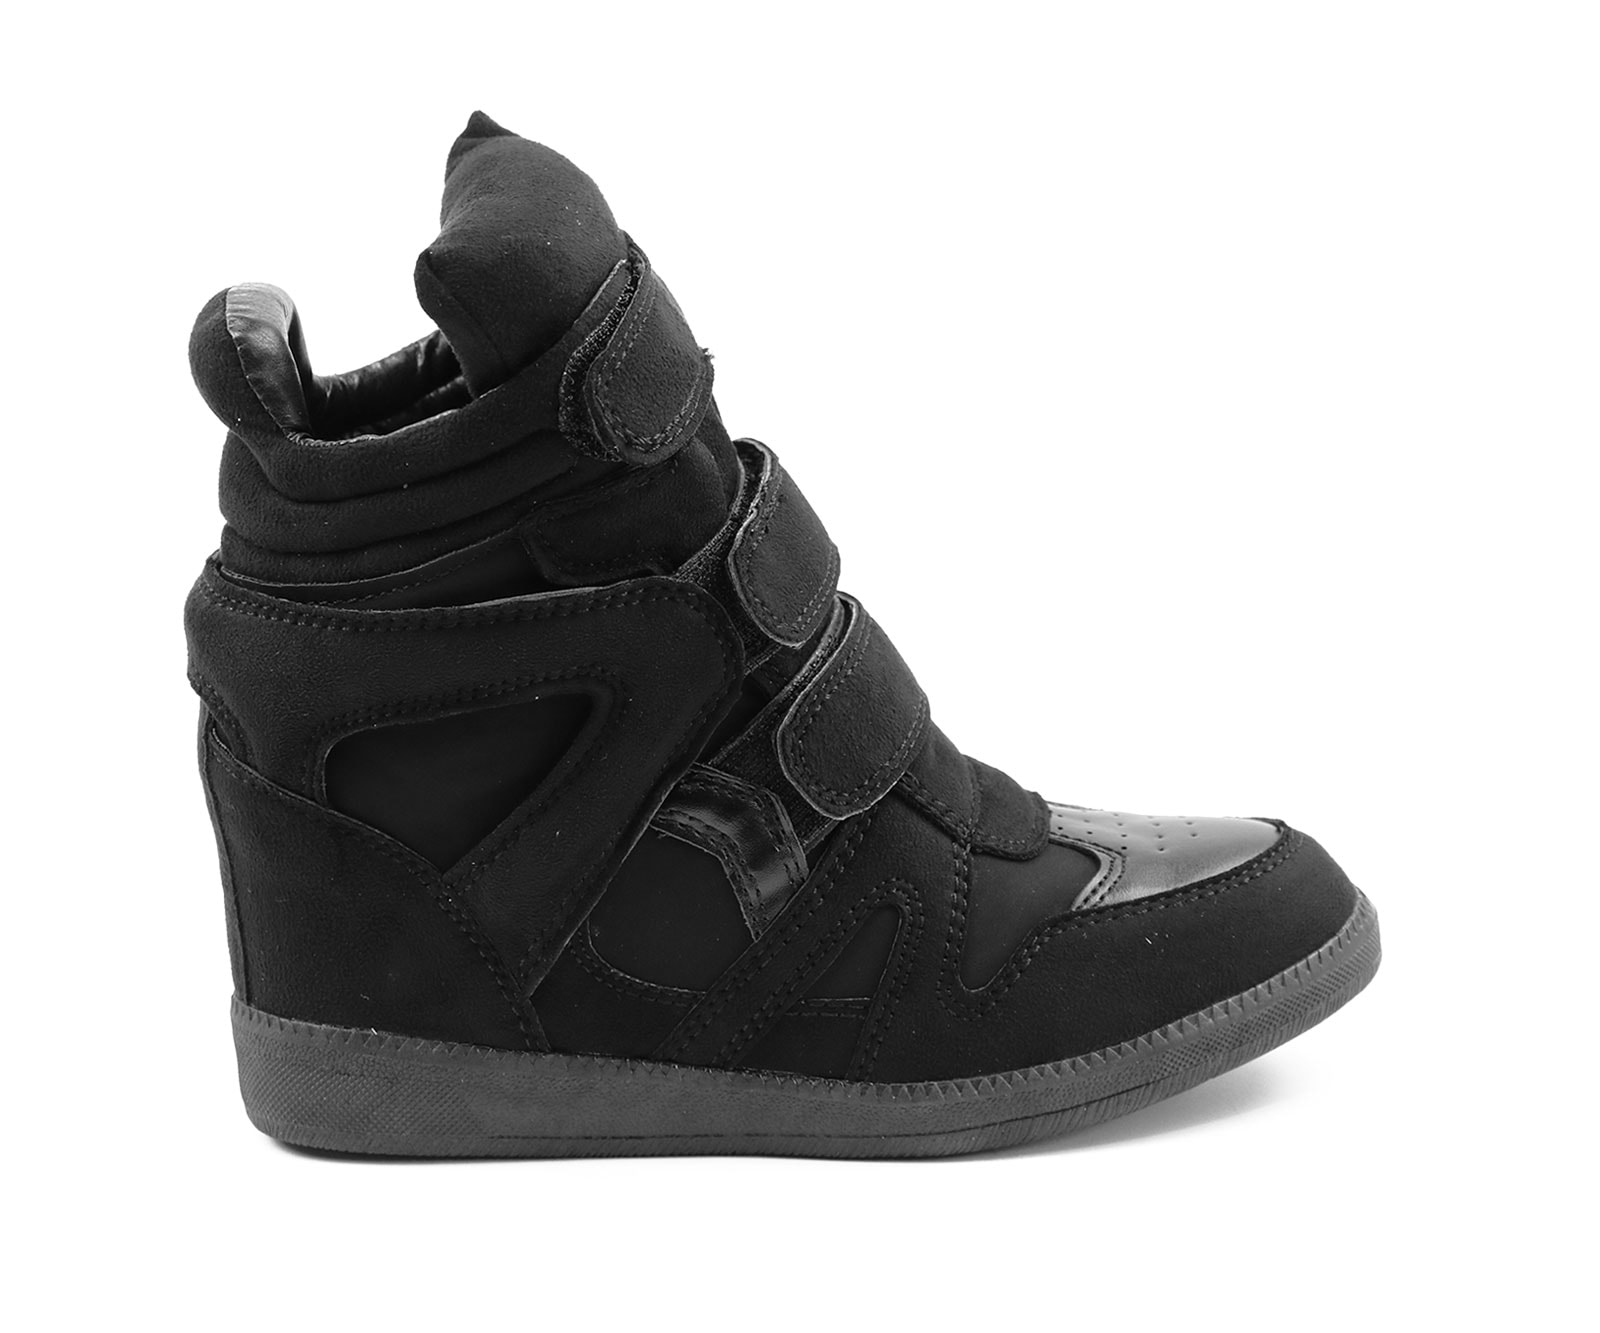 Conform ik ben slaperig Stijgen Wedge Sneakers met sleehak - zwart - Shoe Level - Nederland